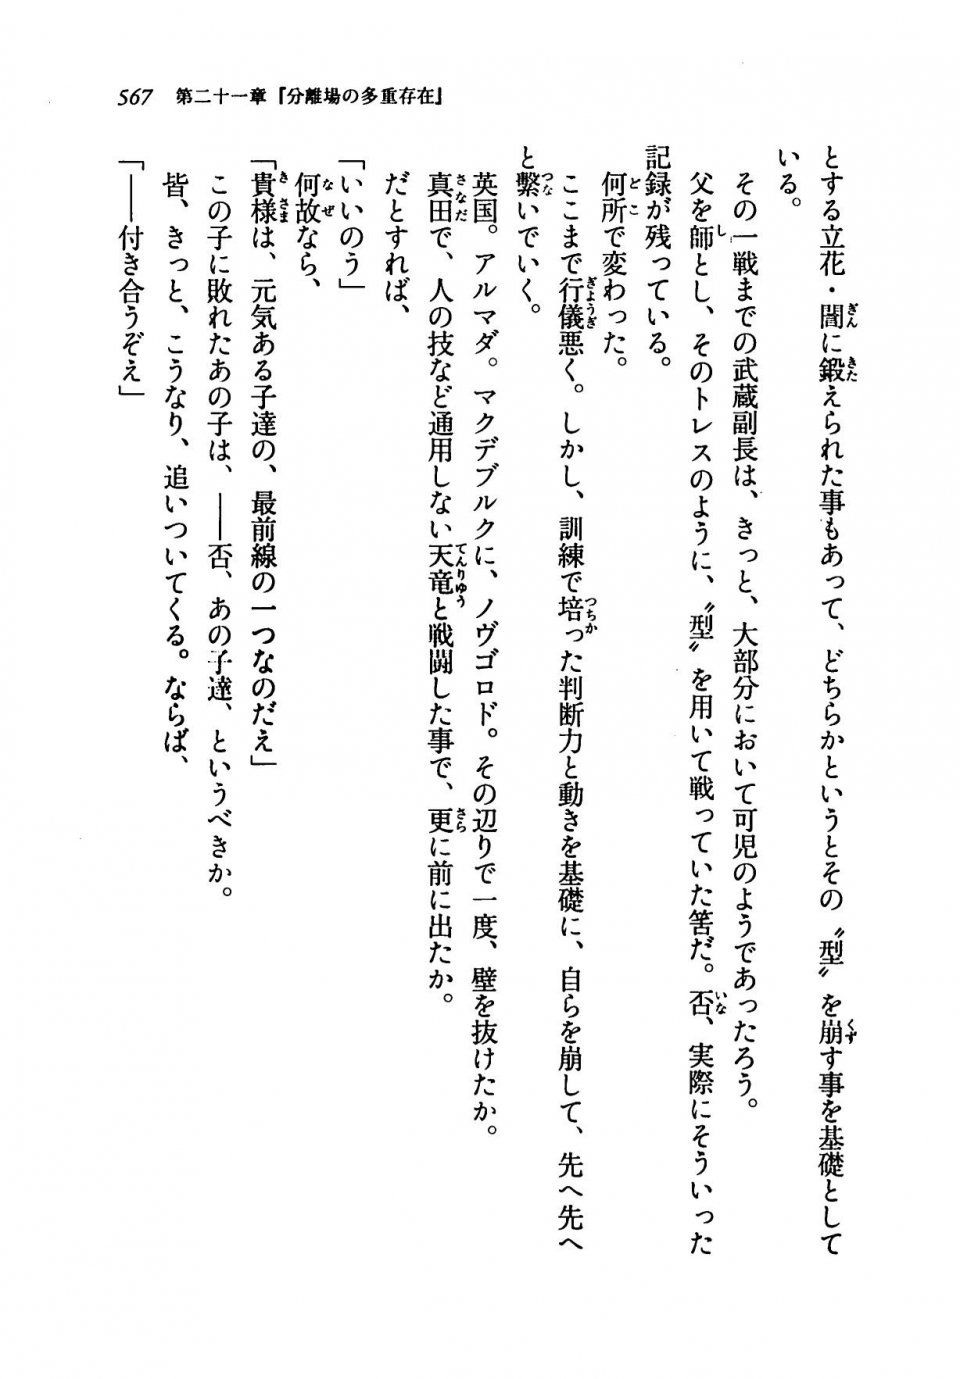 Kyoukai Senjou no Horizon LN Vol 19(8A) - Photo #567